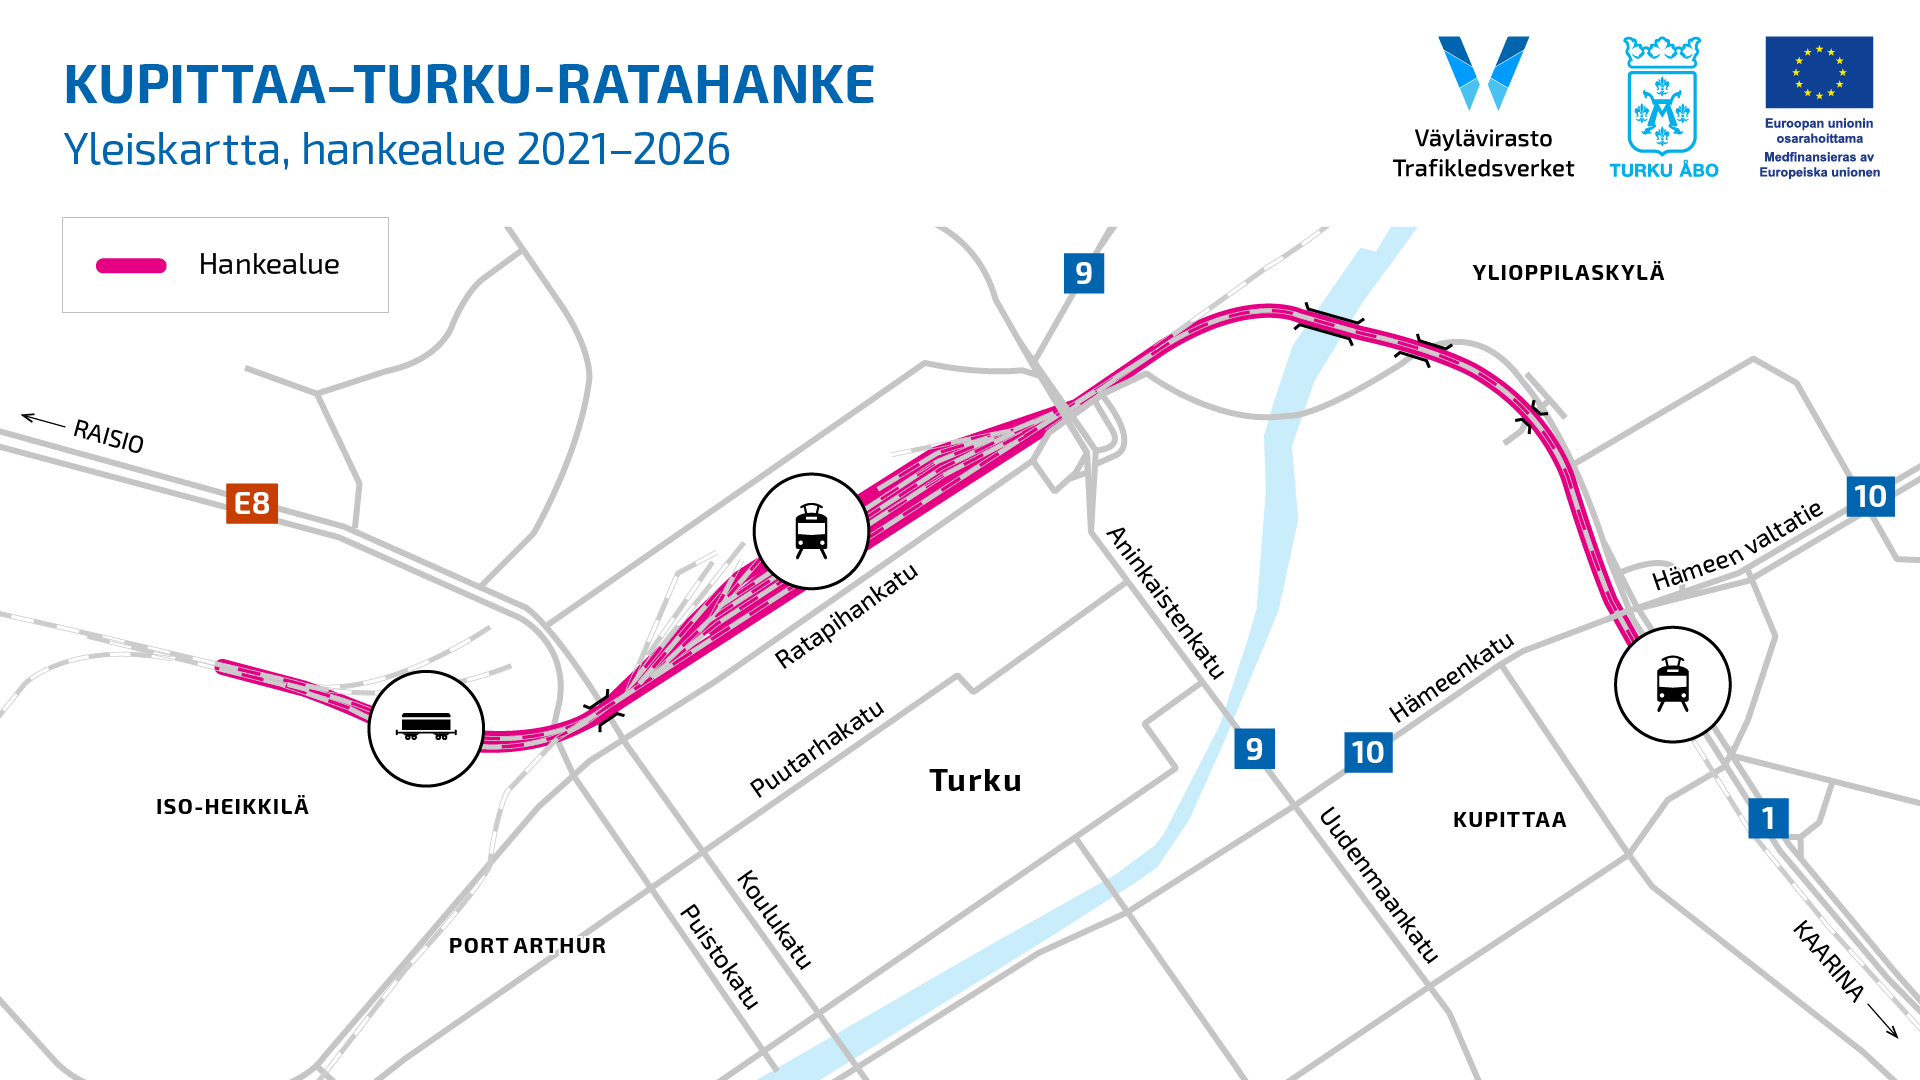 Kartta: Kupittaa–Turku-ratahankkeen rakentaminen ja parantaminen keskittyy Heikkilän tavararatapihalle, Turun ratapihalle rautatieaseman ympäristöön sekä Kupittaa-Turku välille.